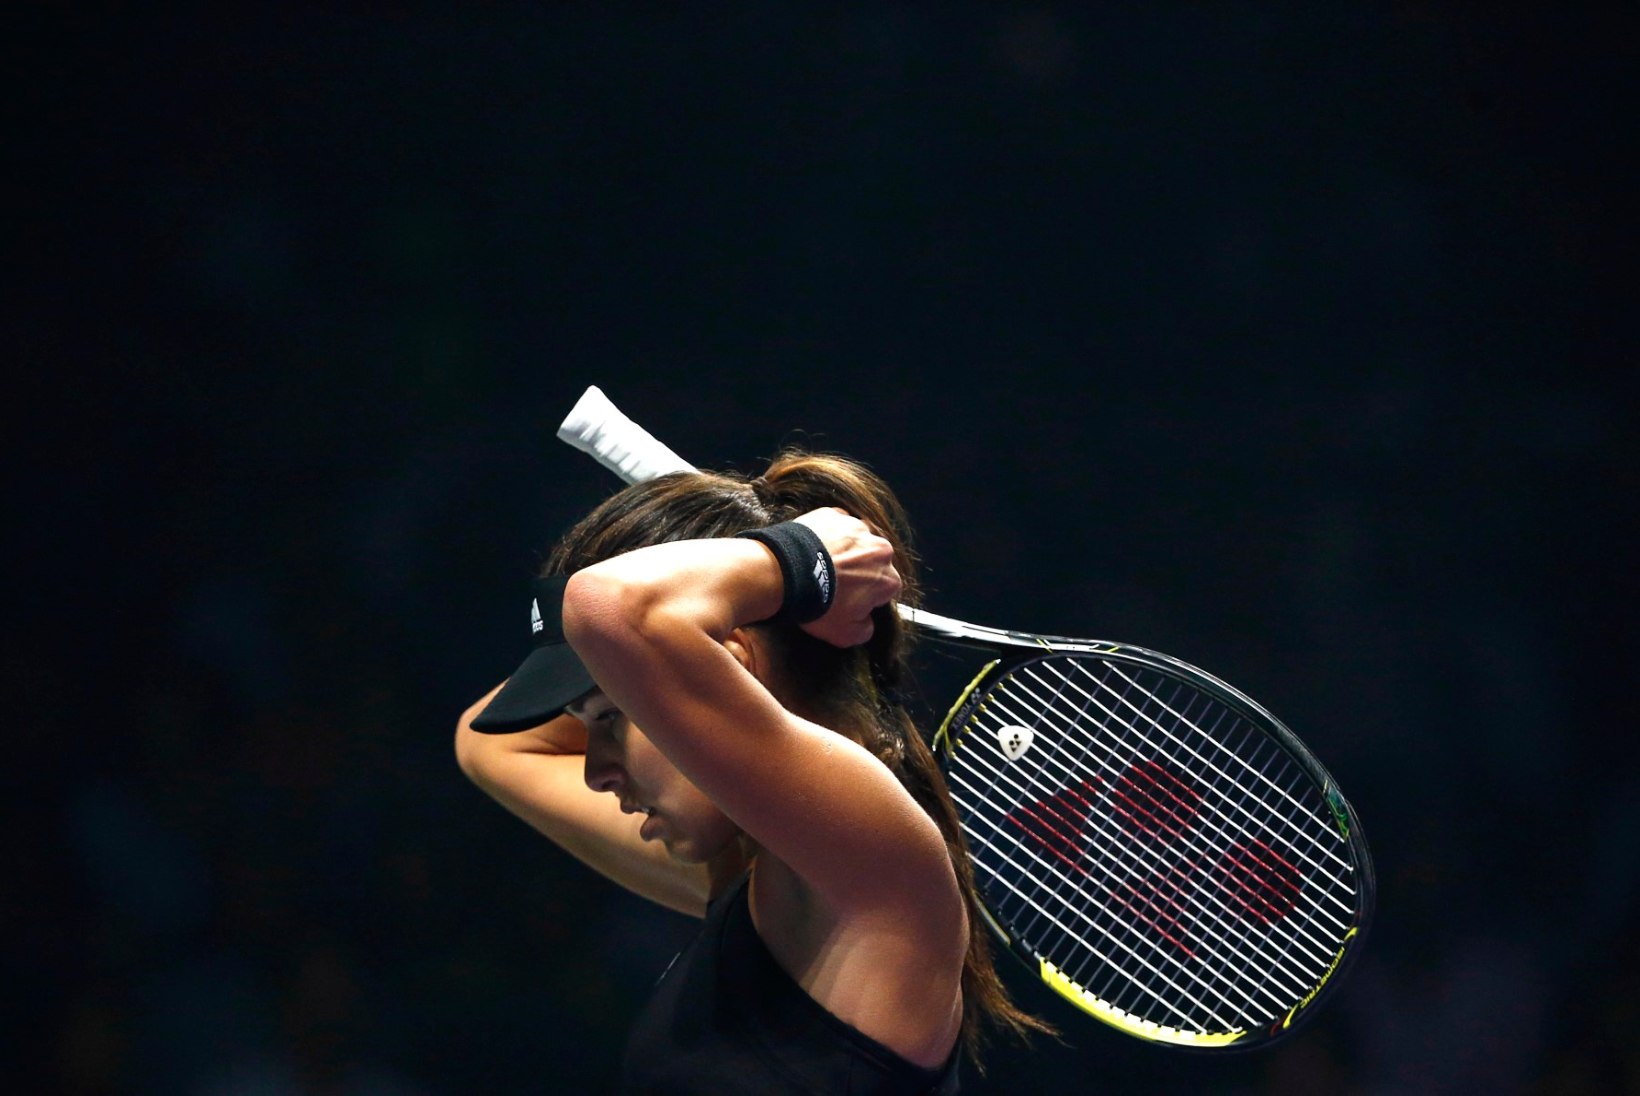 FOTOD: Williams ja Halep alustasid WTA aastalõputurniiri võidukalt